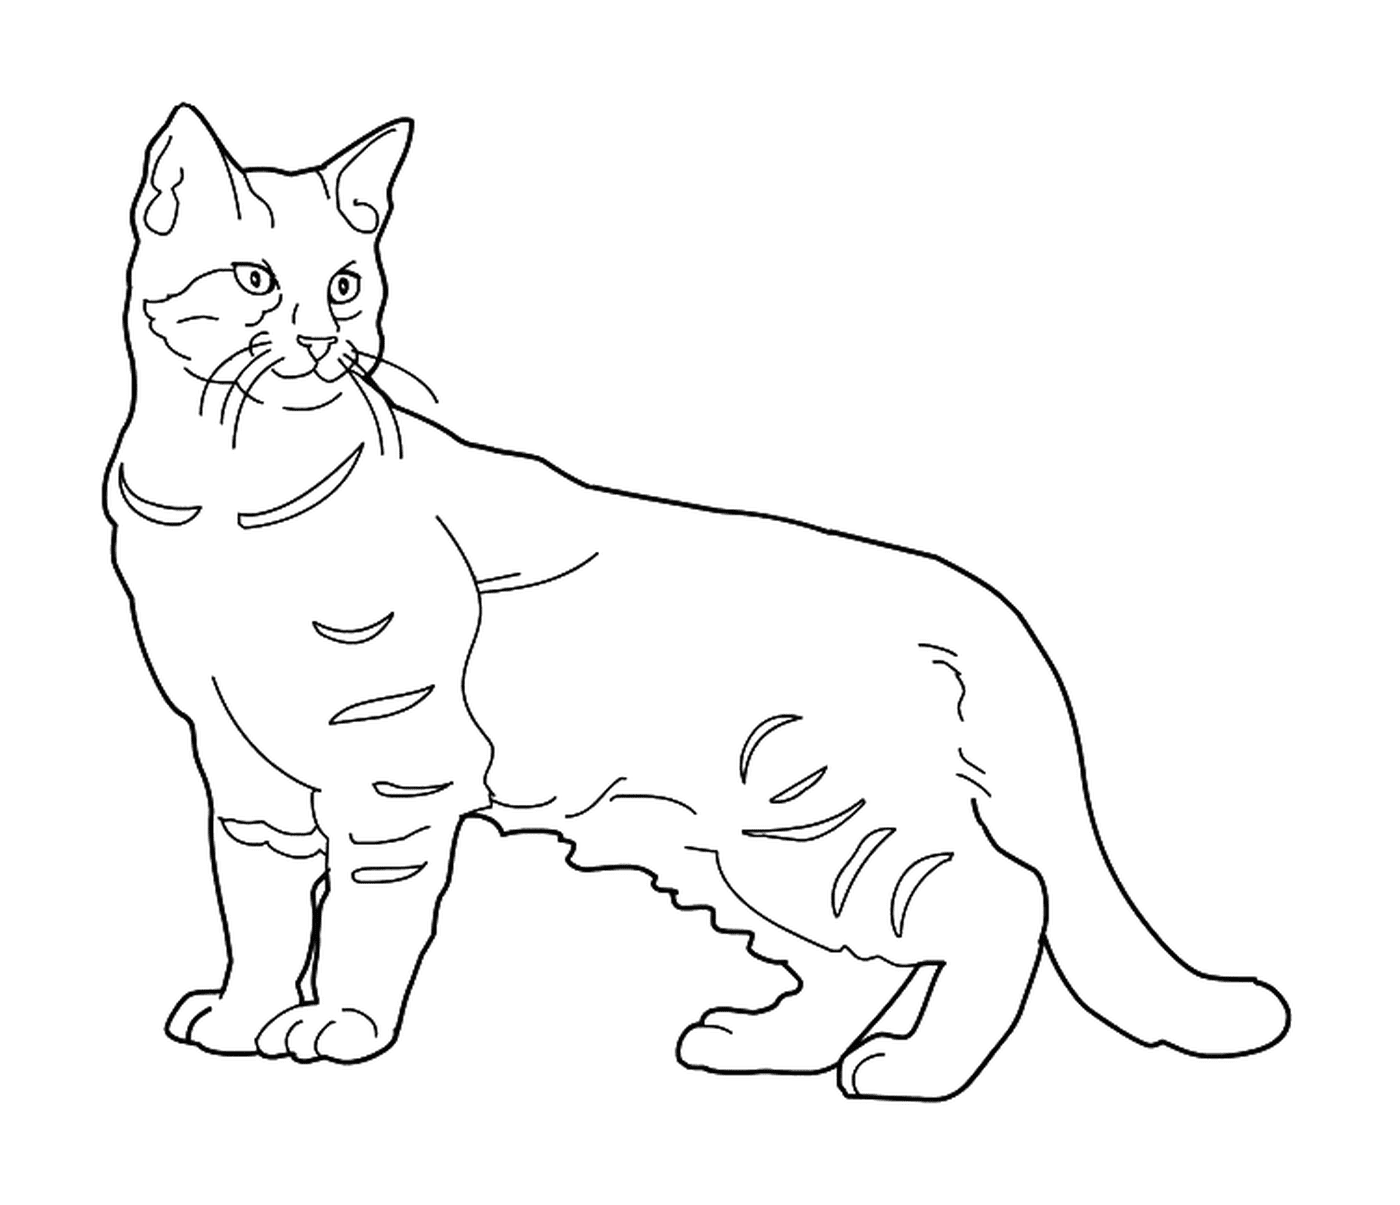  Un Pixie Bob, un gato con una cola corta 